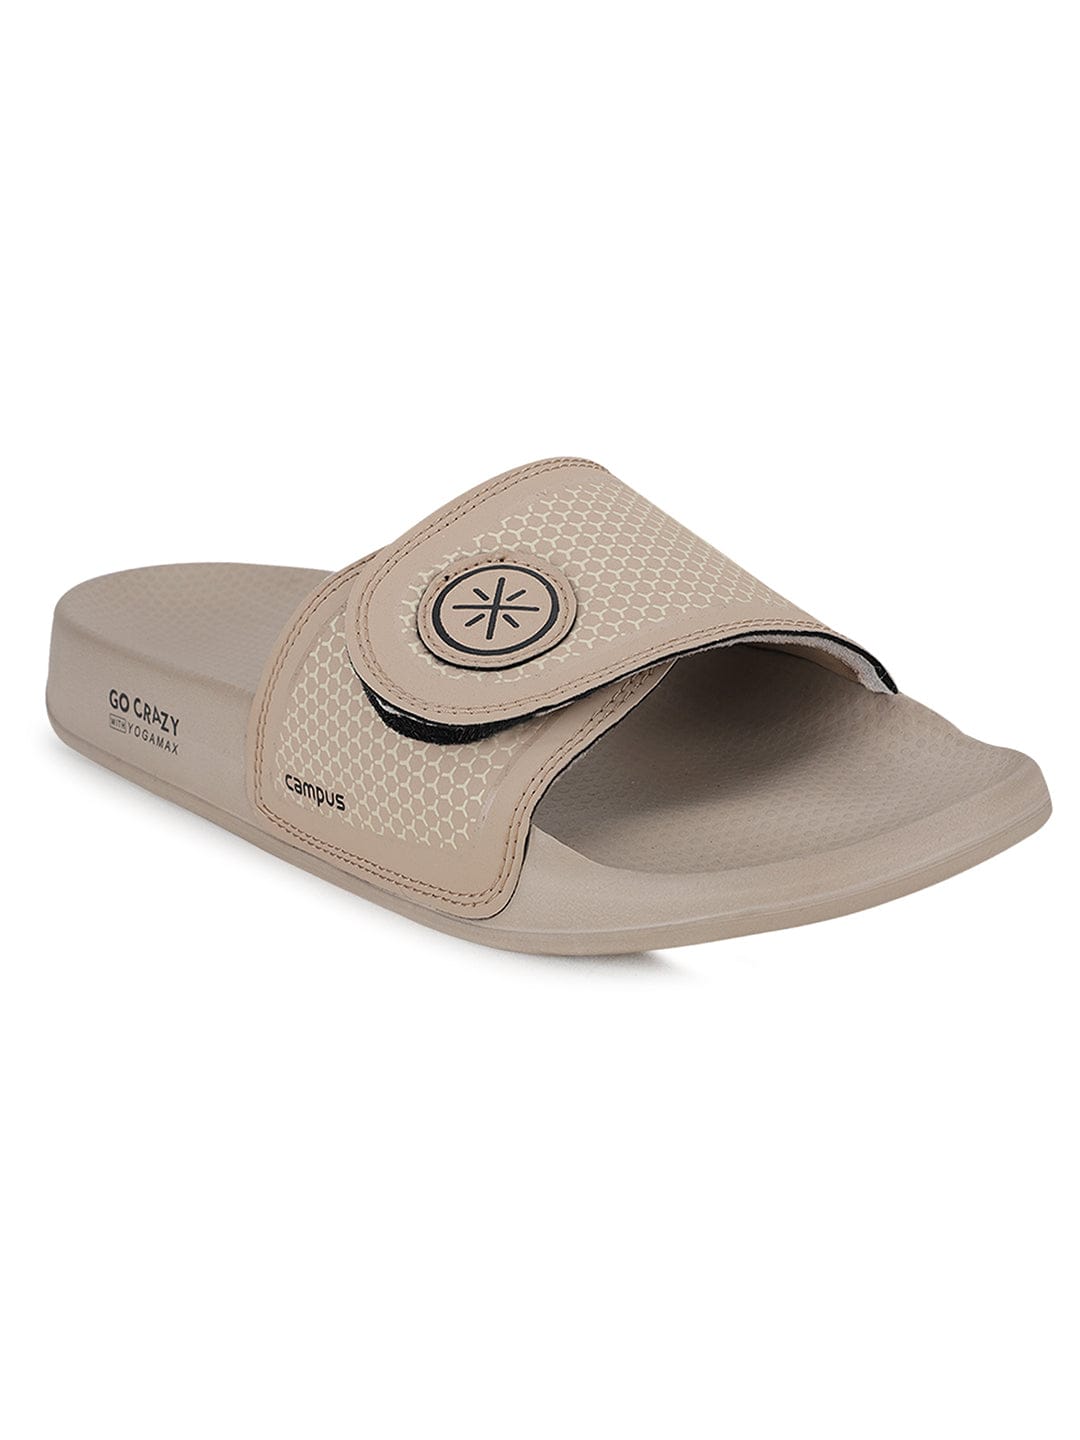 Buy GC-SL-07 Beige Men's Sliders online | Campus Shoes